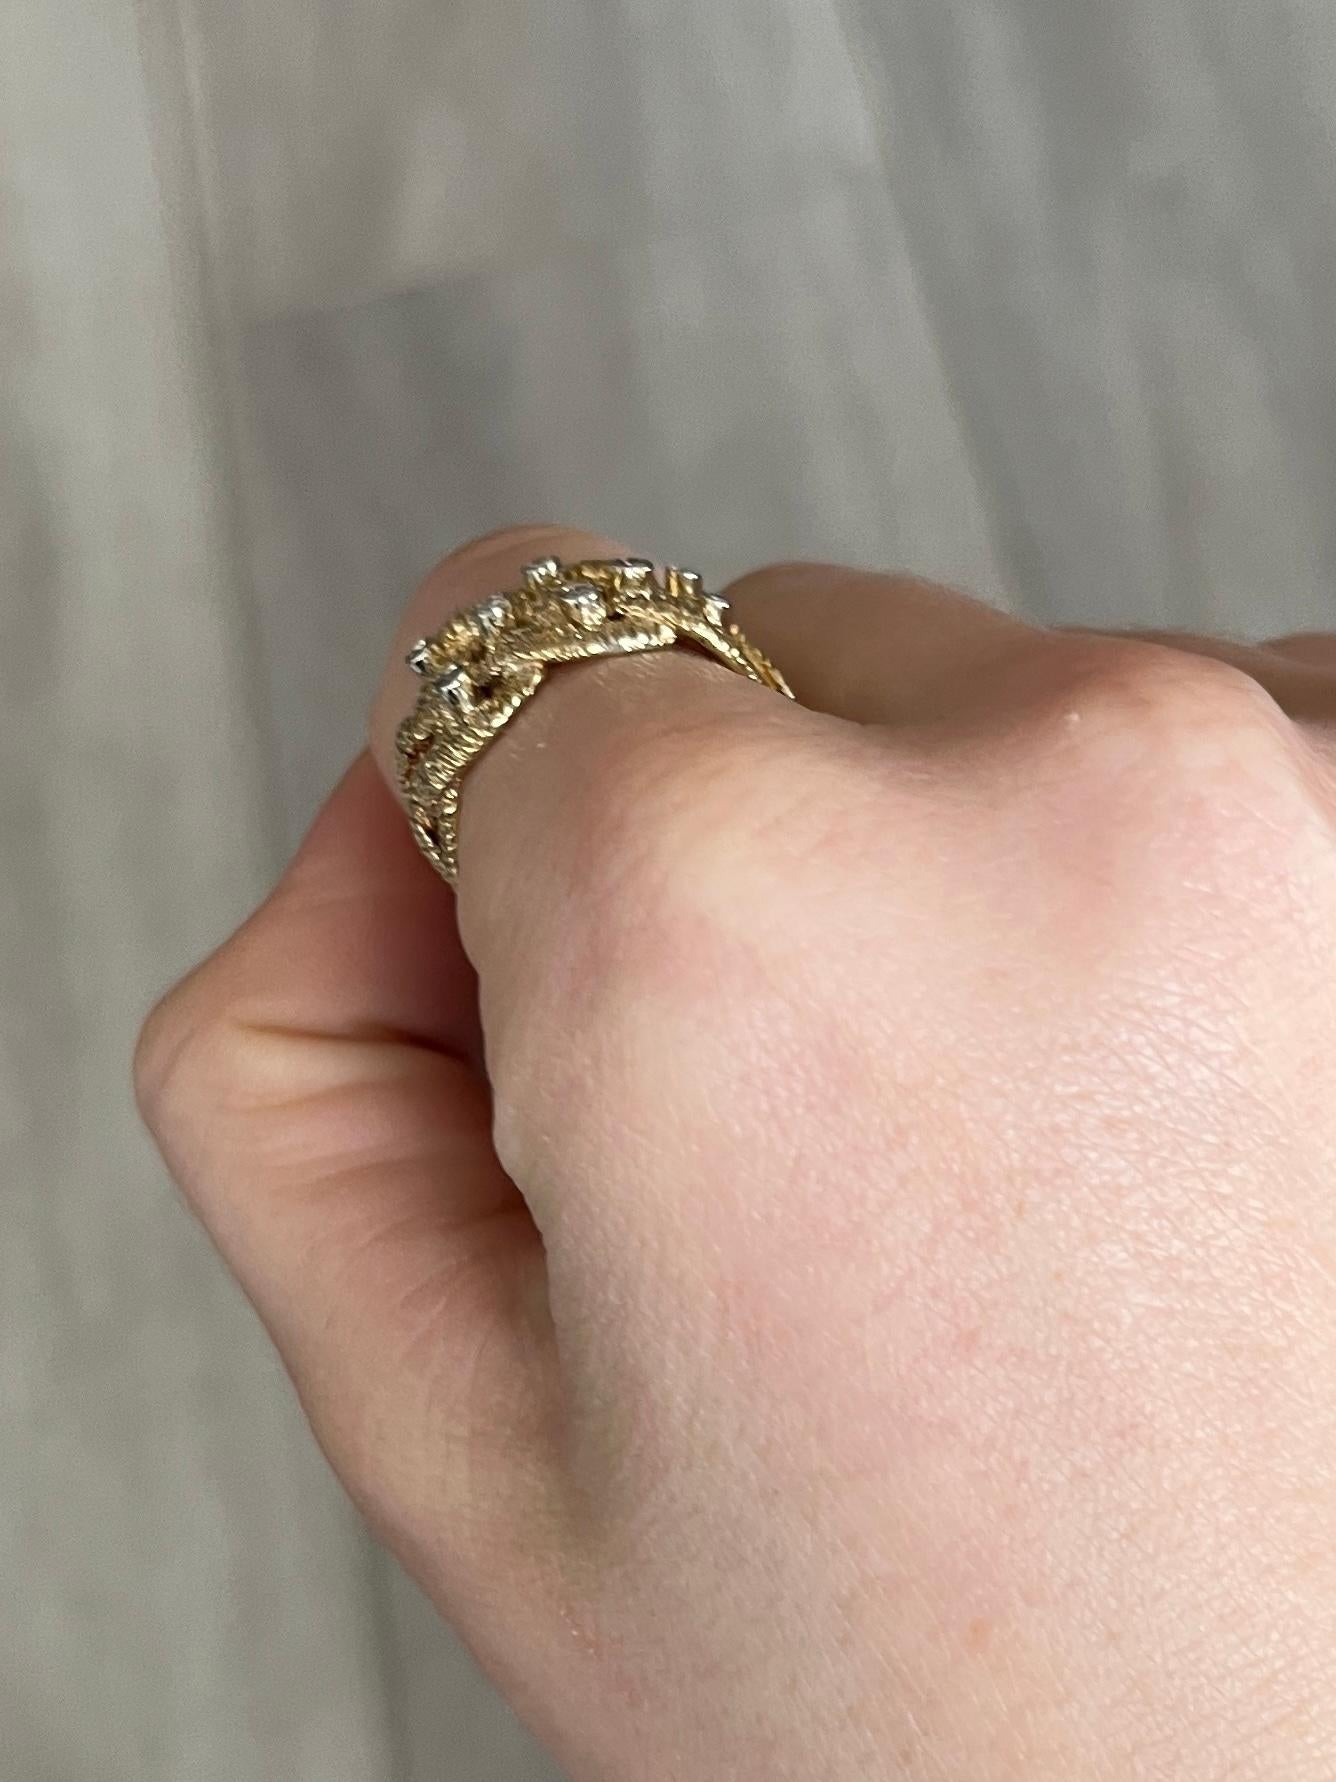 Dieser Ring von Crop & Farr ist mit 8 Diamanten besetzt, die zusammen 32 Pence ergeben. Das klobige 18-karätige Gold ist strukturiert und zu einem schönen breiten Band verwoben. Gekennzeichnet mit dem Gütesiegel London 1973. 

Ringgröße: P oder 7